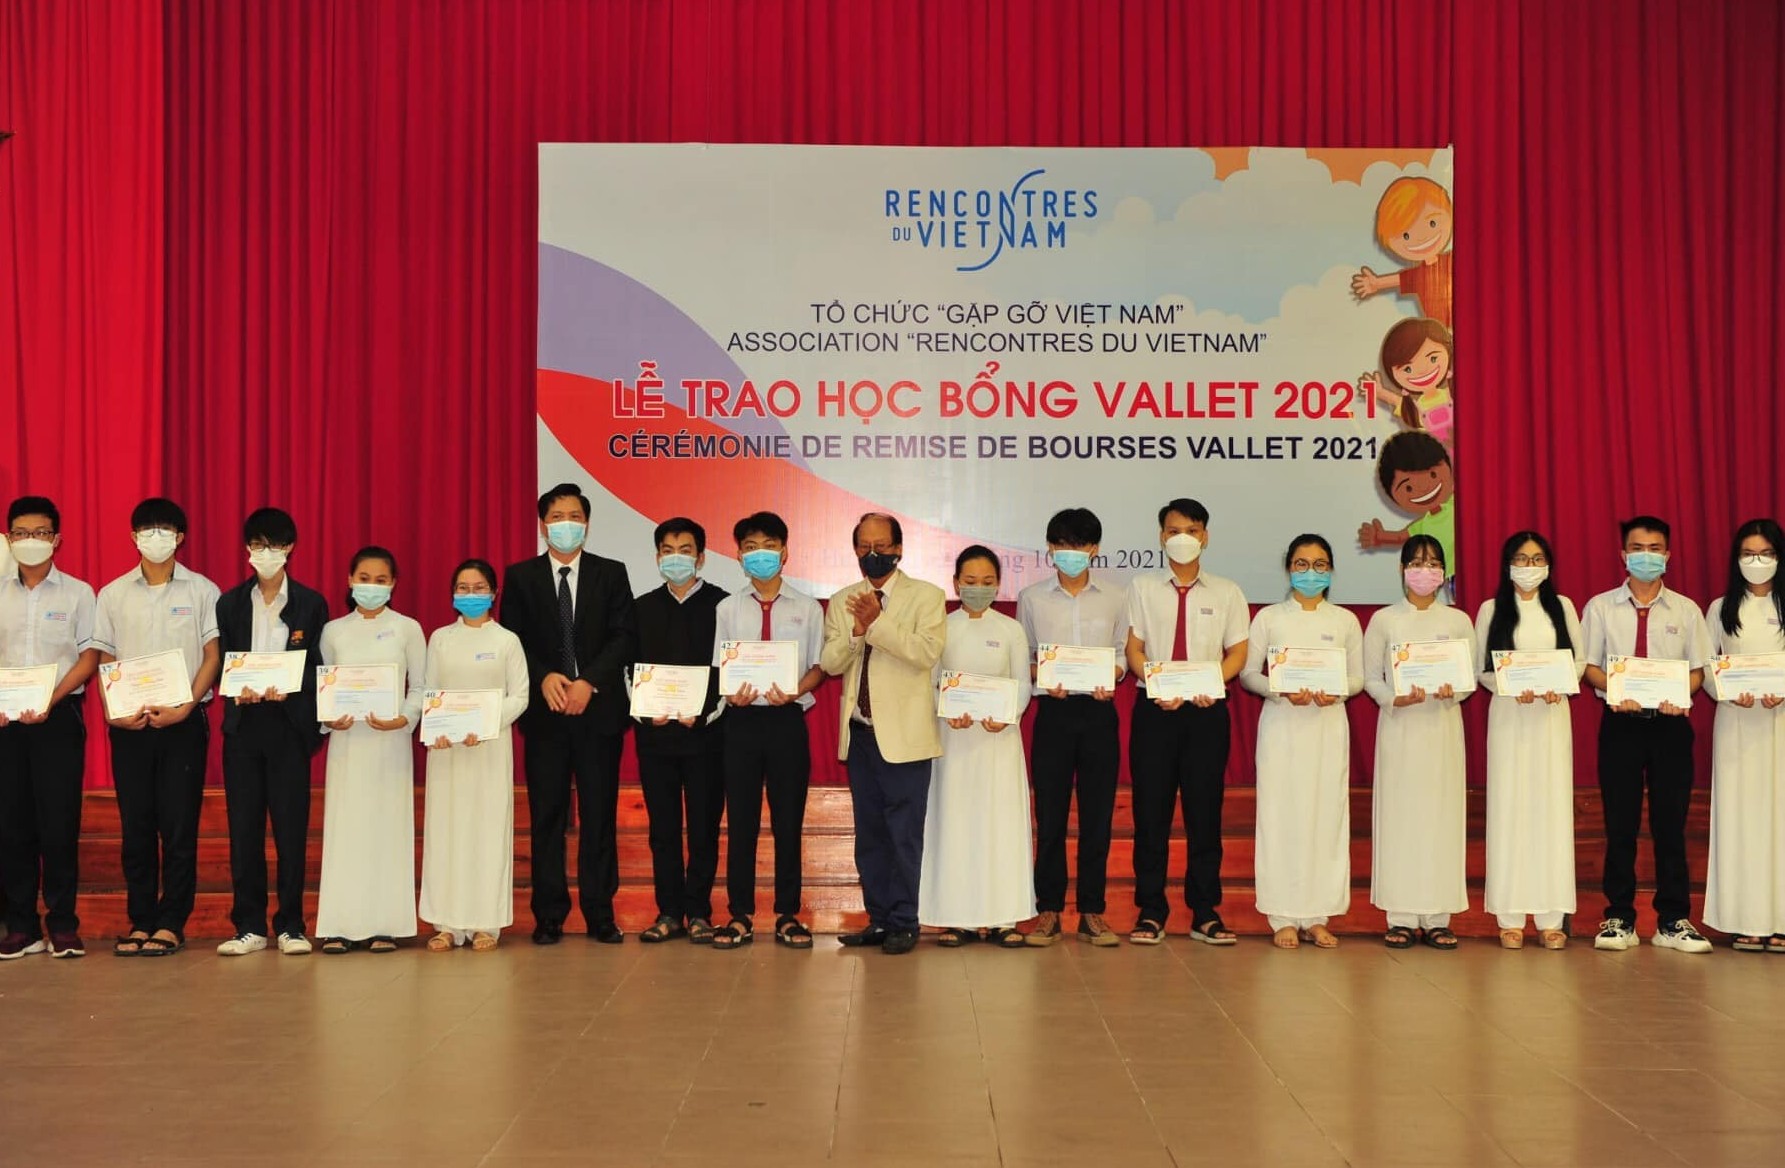 Hơn 2.000 học sinh, sinh viên Việt Nam được cấp học bổng Vallet của Tổ chức Gặp gỡ Việt Nam